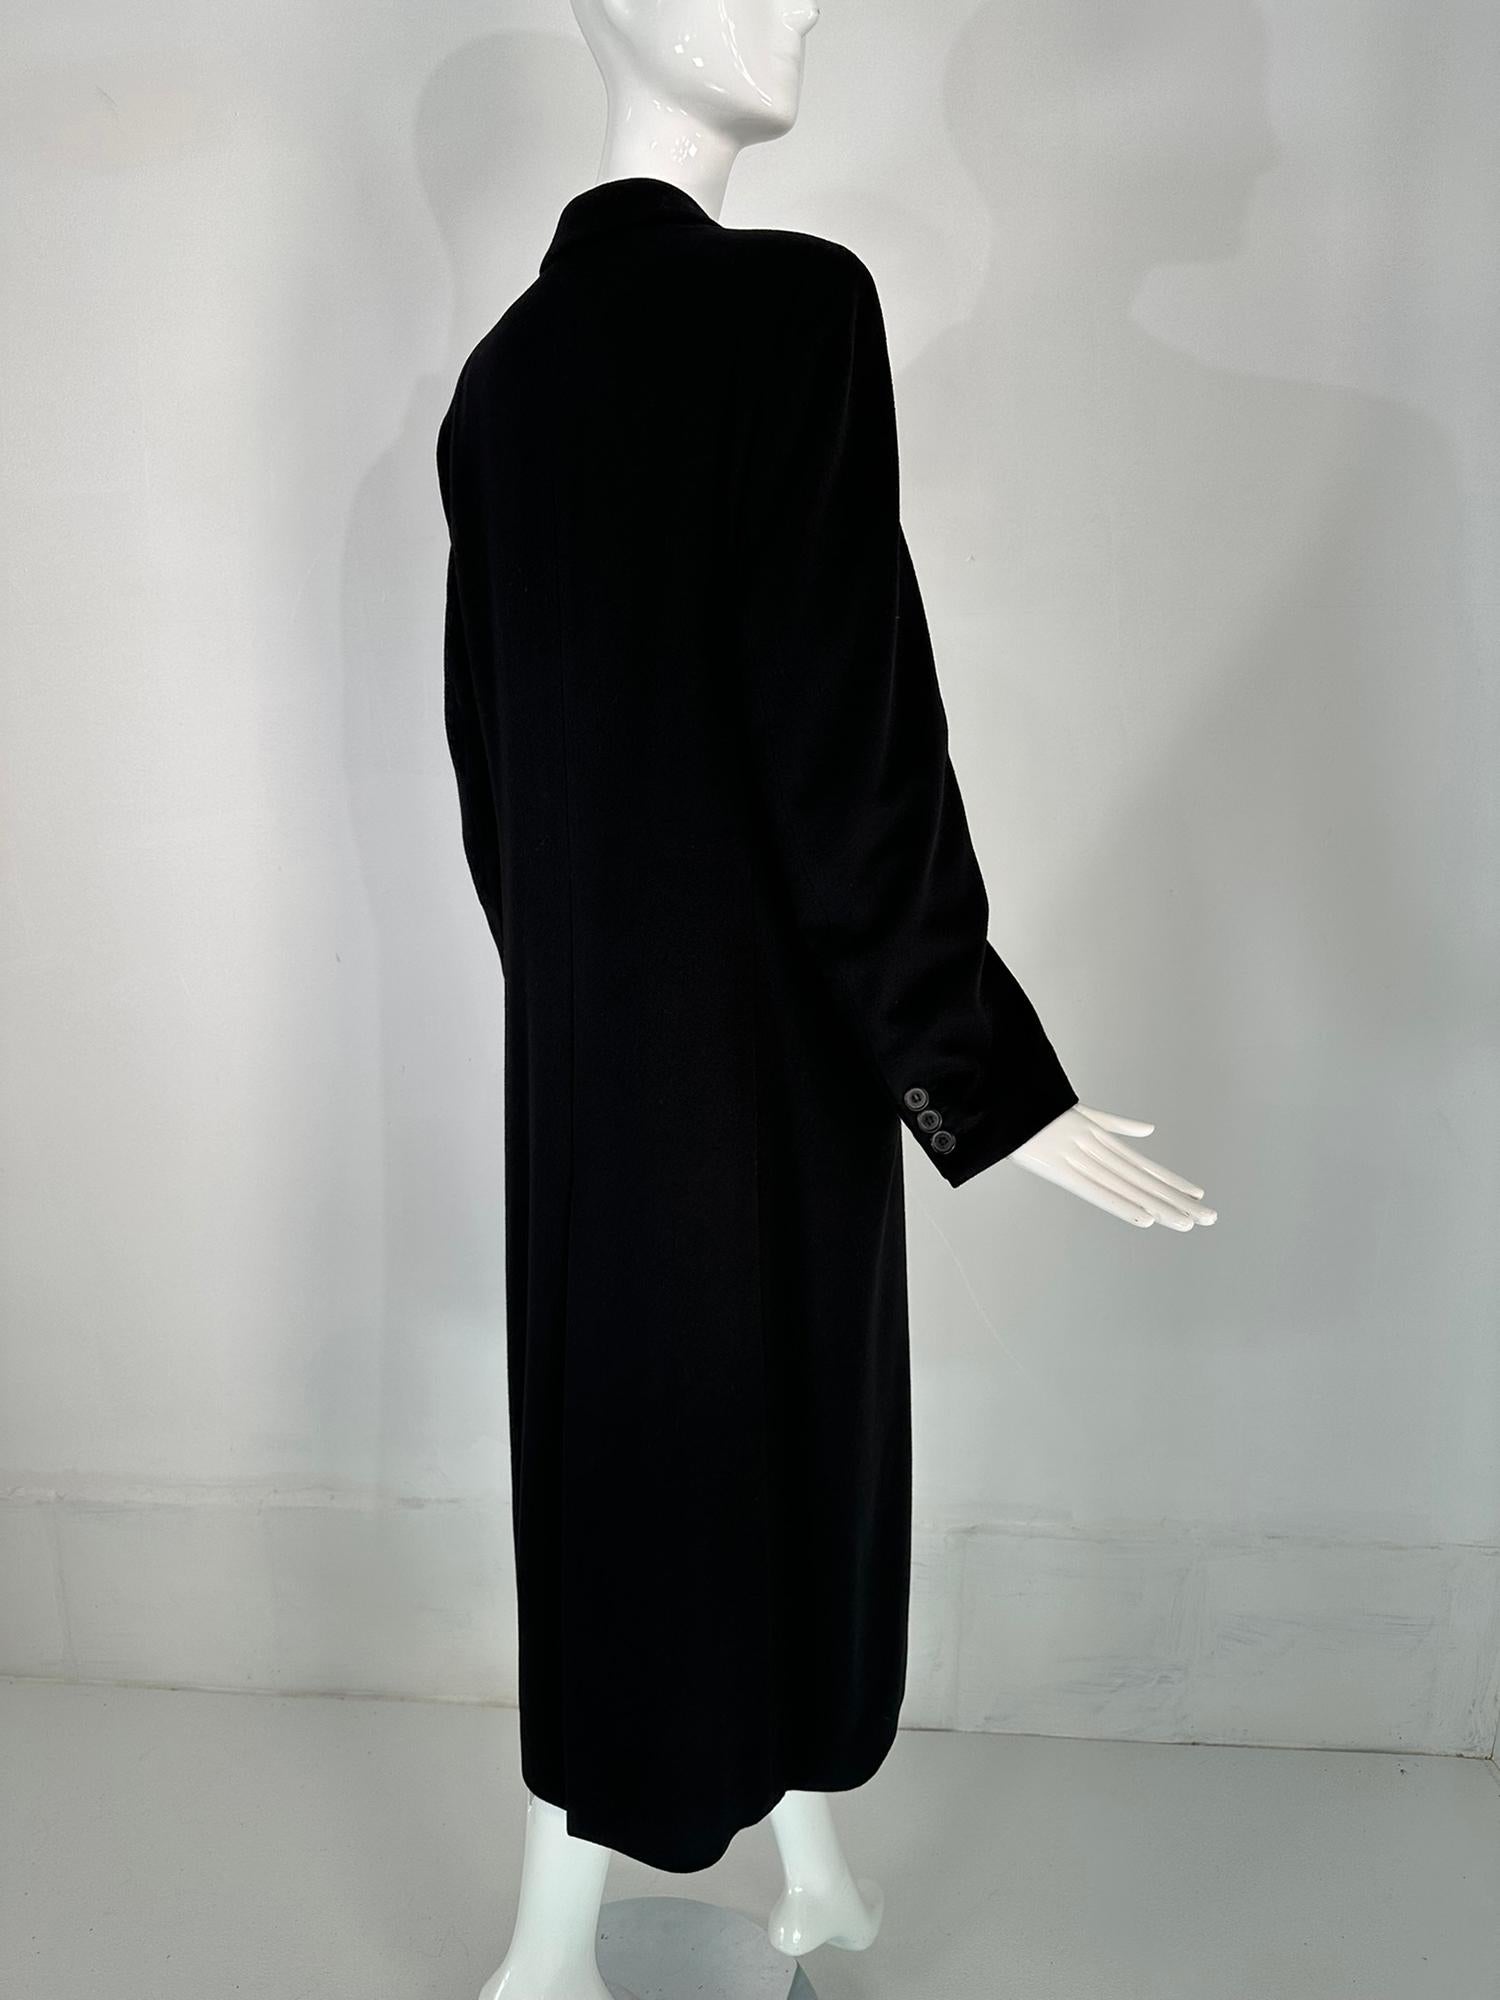 Giorgio Armani Classico Black Label Black Cashmere Double Breasted Winter Coat 2